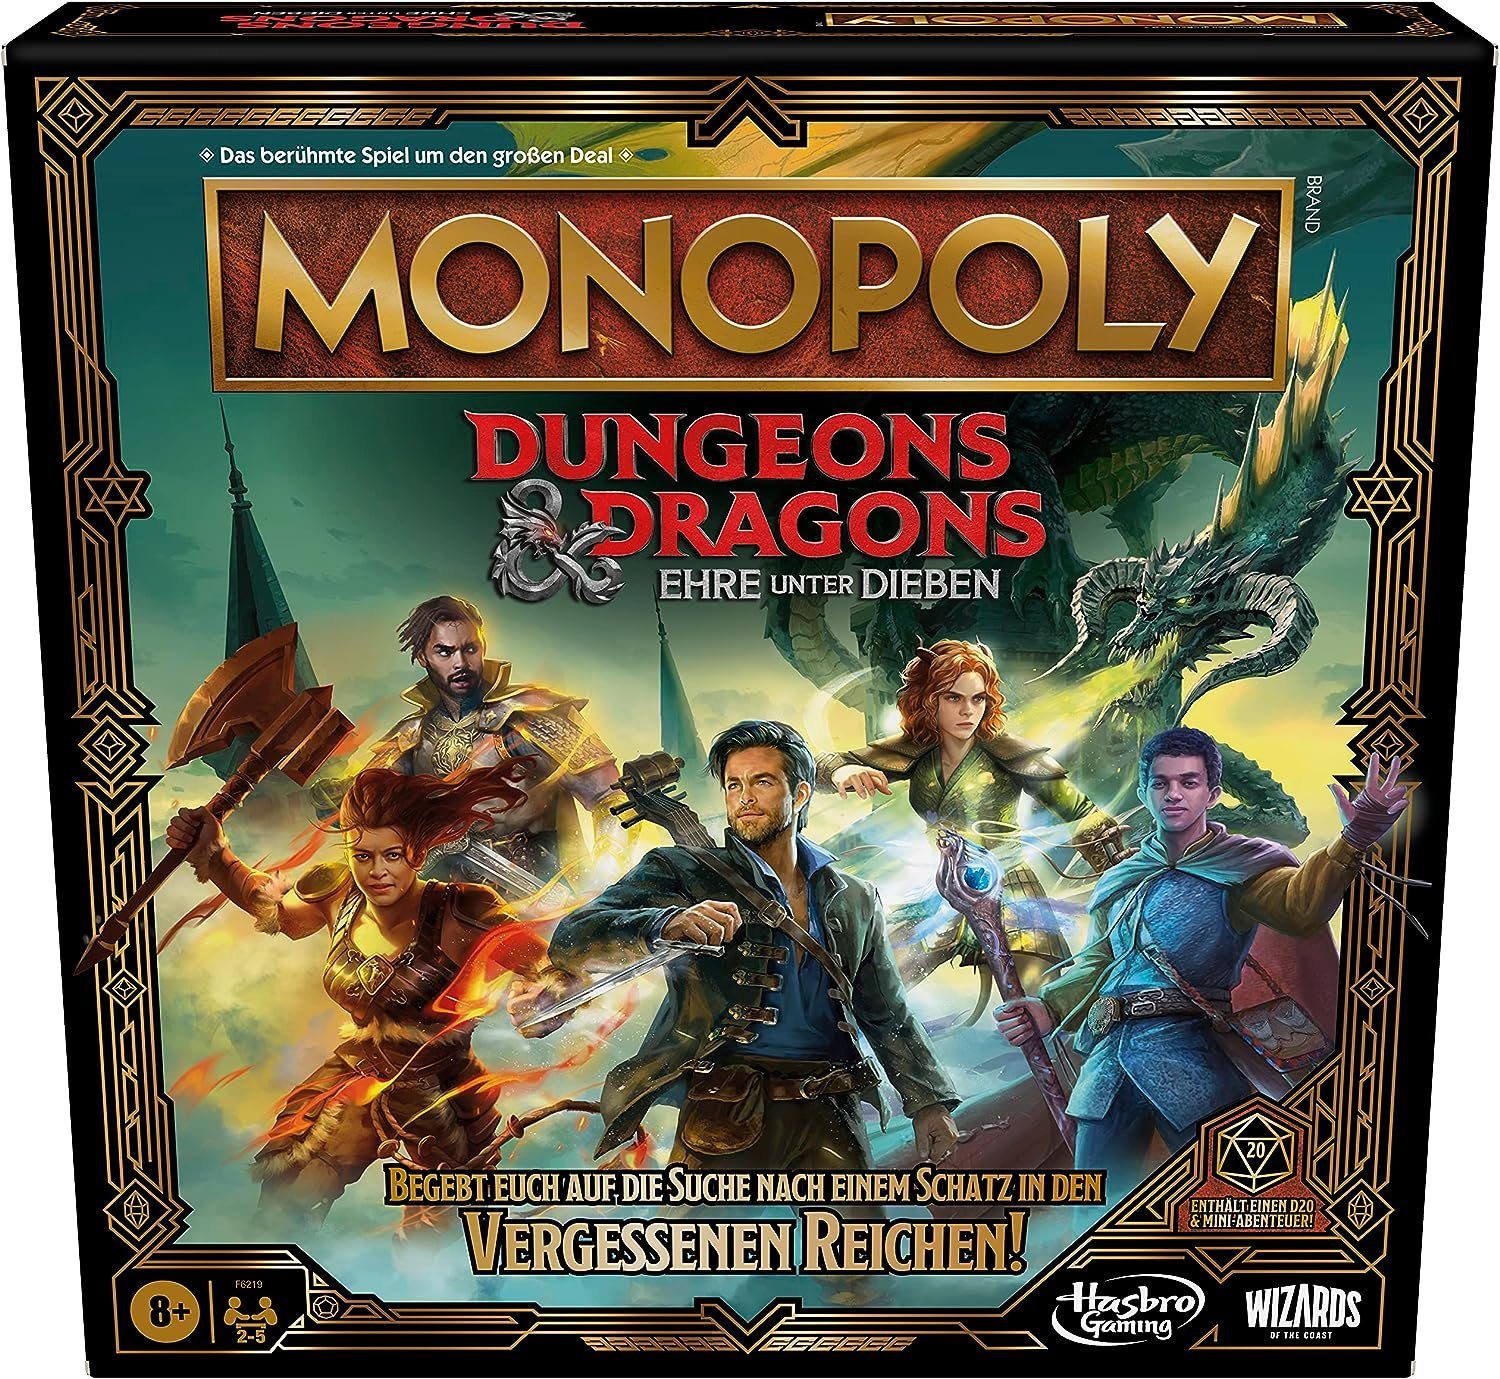 Dungeons Spiel, Dieben unter Dragons: Monopoly Hasbro and Brettspiel Ehre